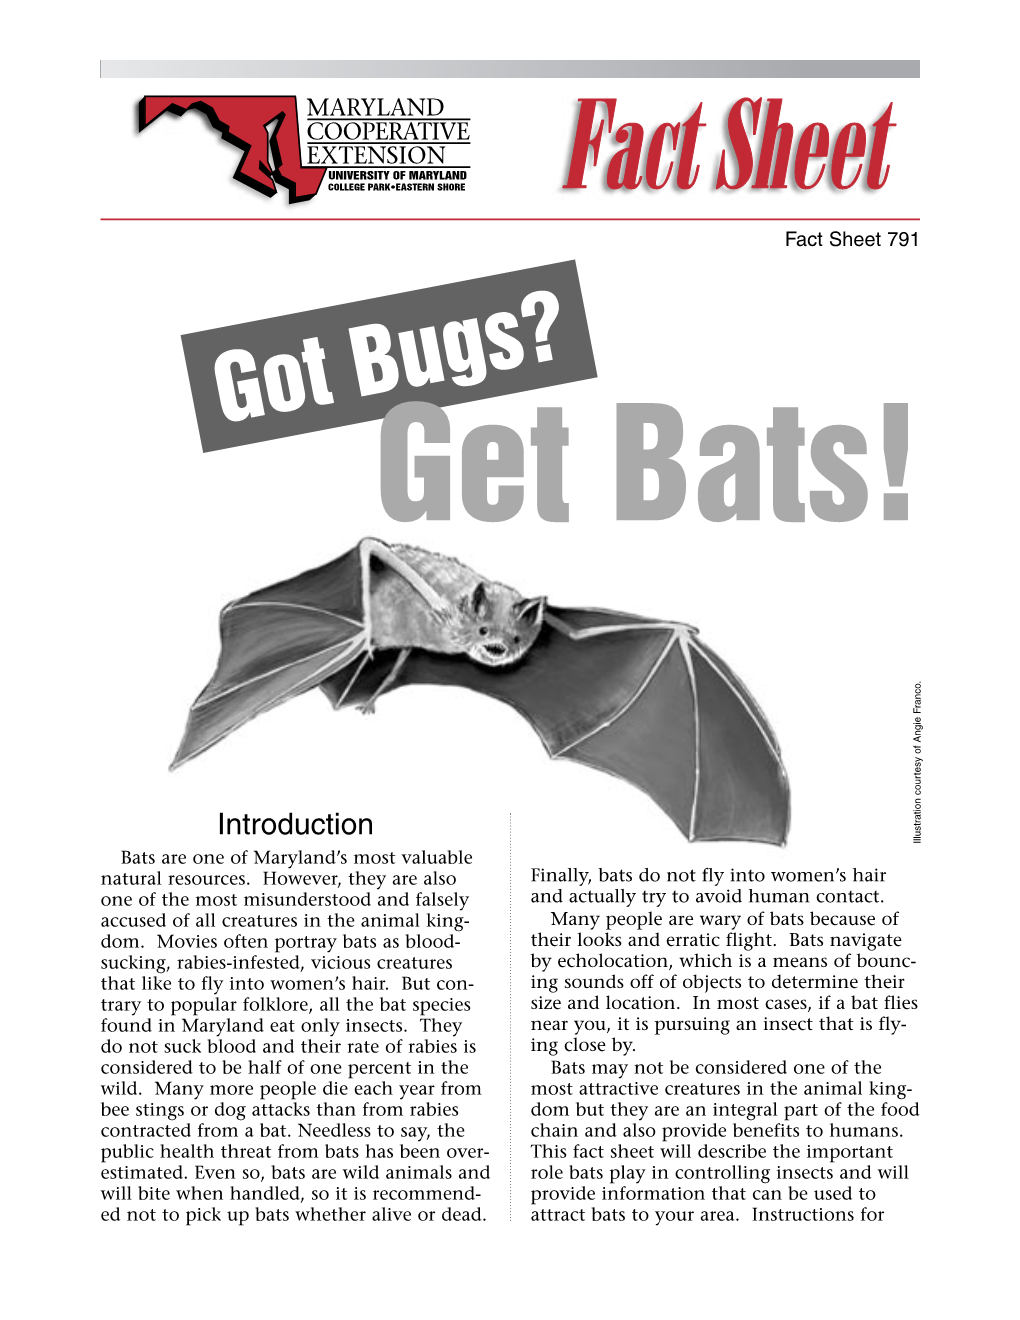 Got Bugs? Get Bats!